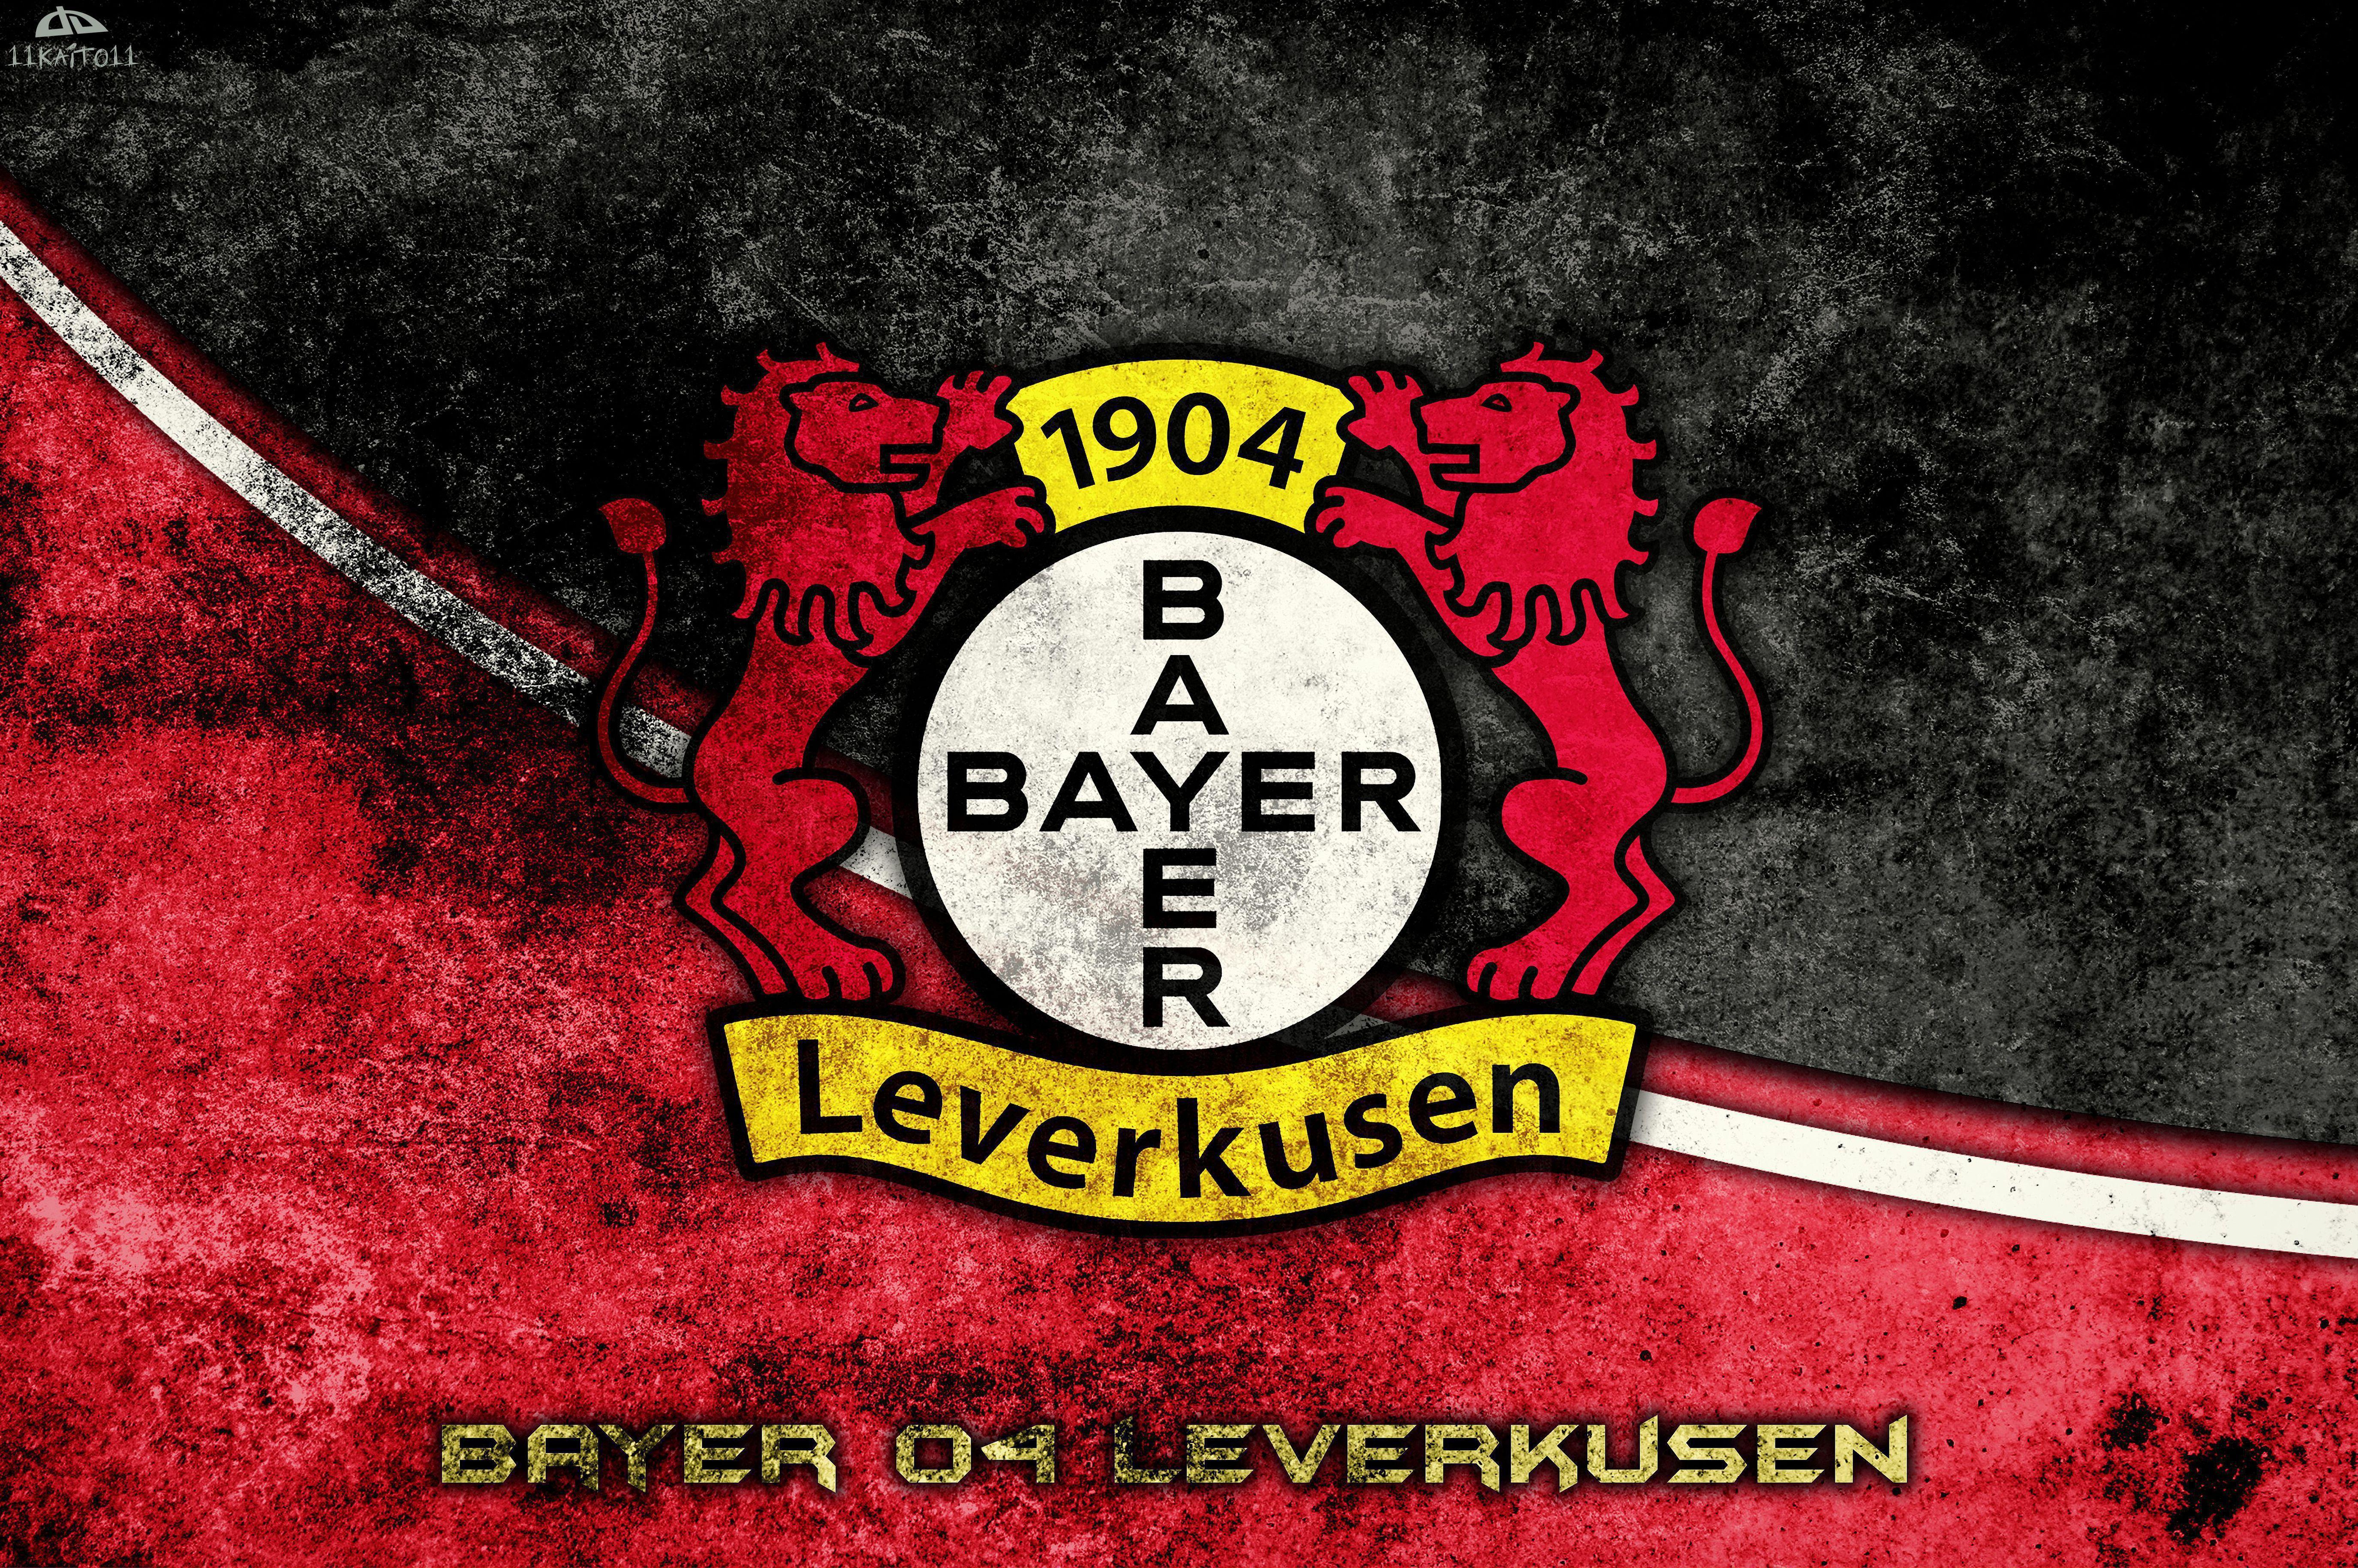 Buyer 04 Leverkusen Ticket